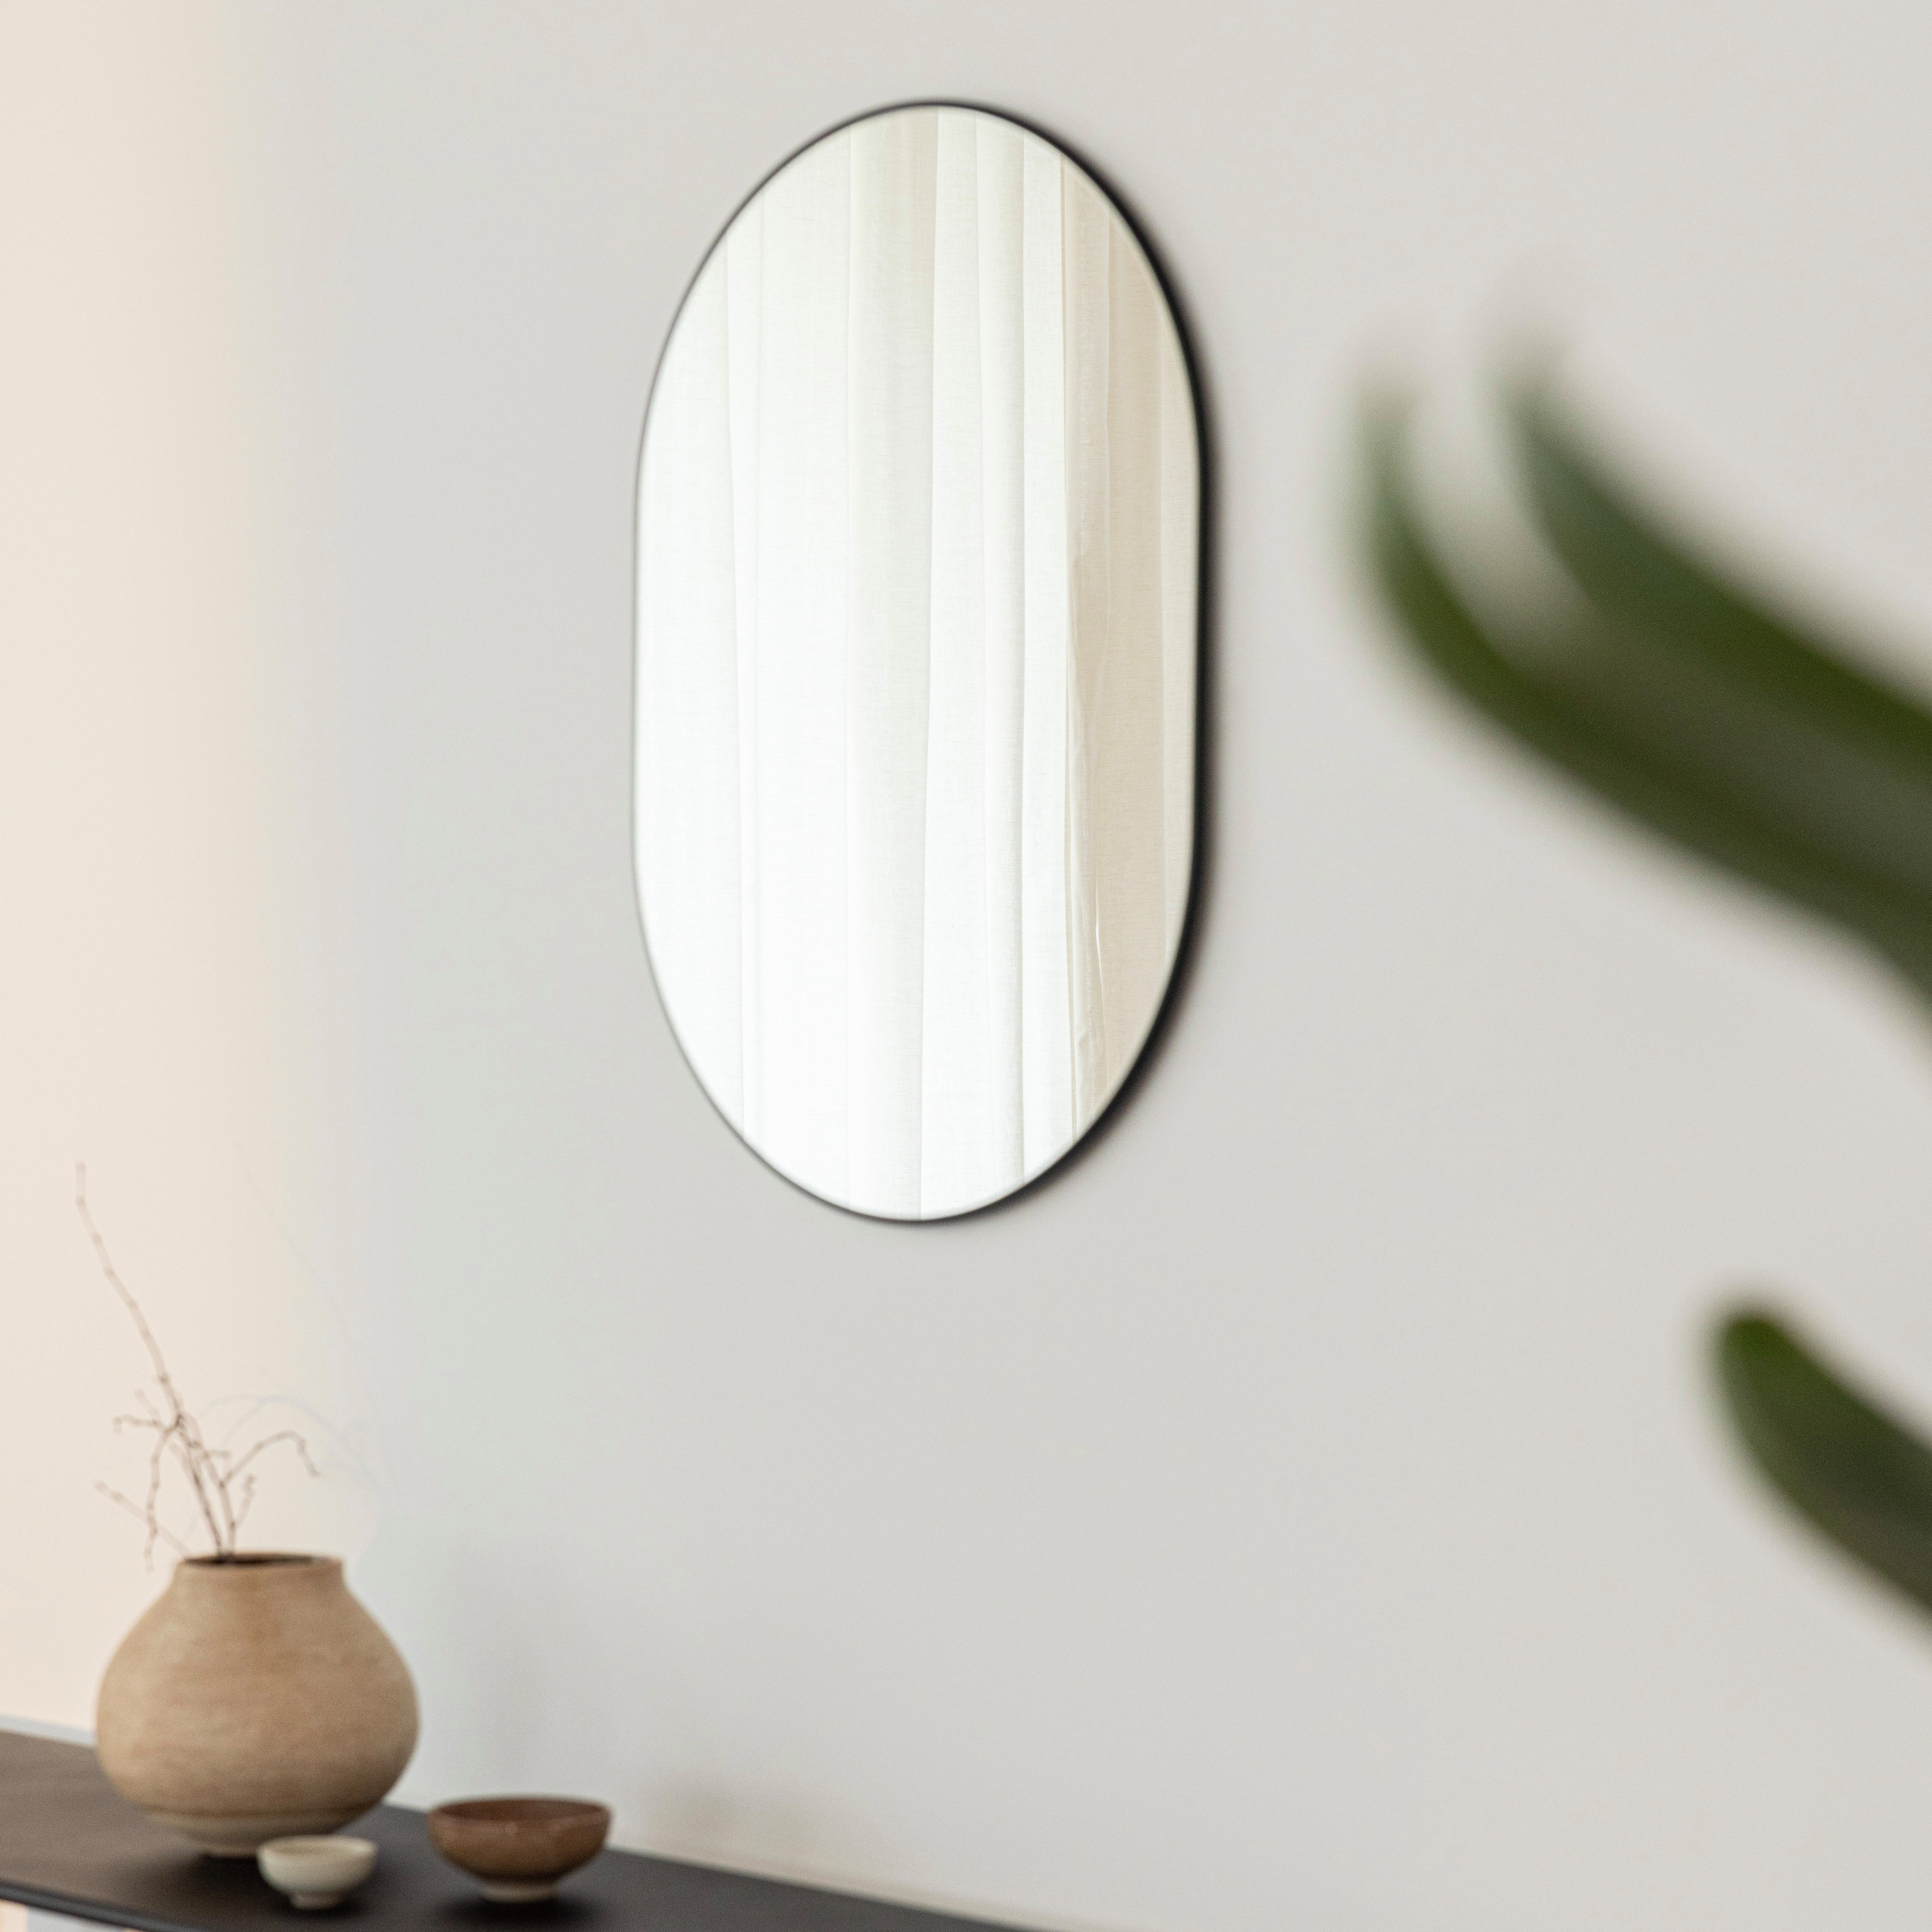 Metallbude Wandspiegel CAYA, oval, minimalistisches Design, 57 x 41 cm